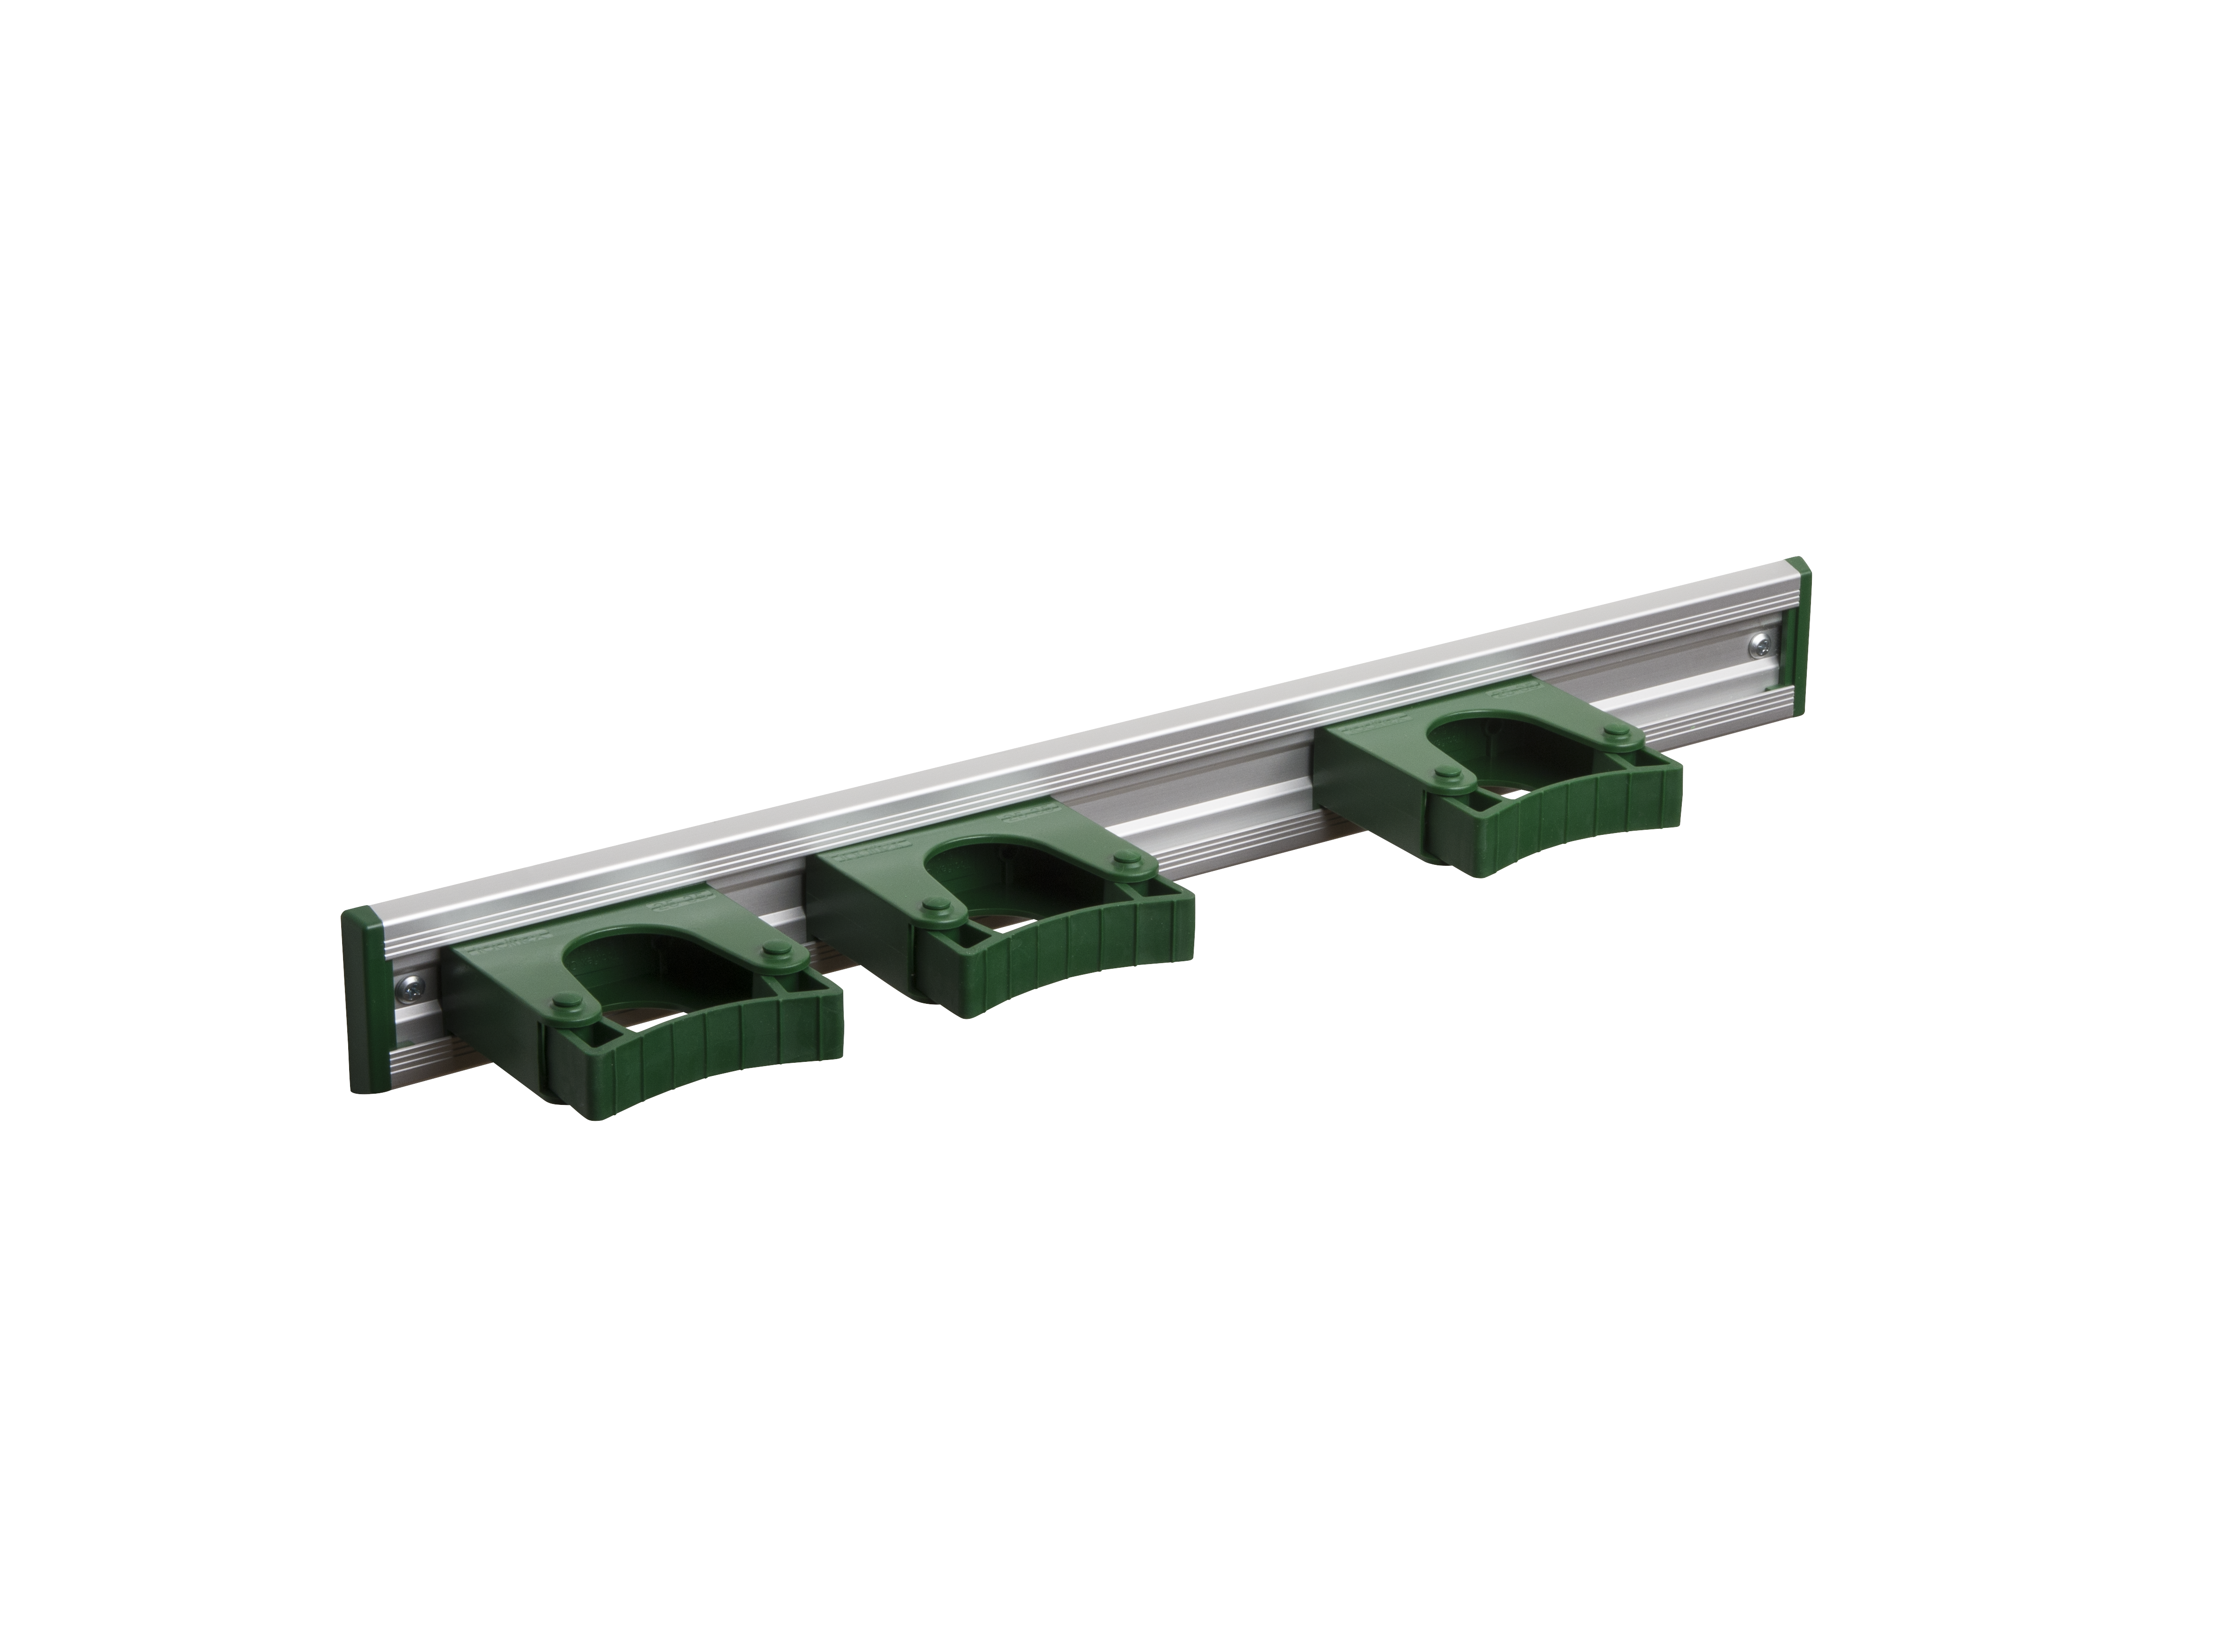 Toolflex Alu-Schiene 50 cm mit grünen Endstücken, bestückt mit 3 grünen Halterungen 25-35 mm